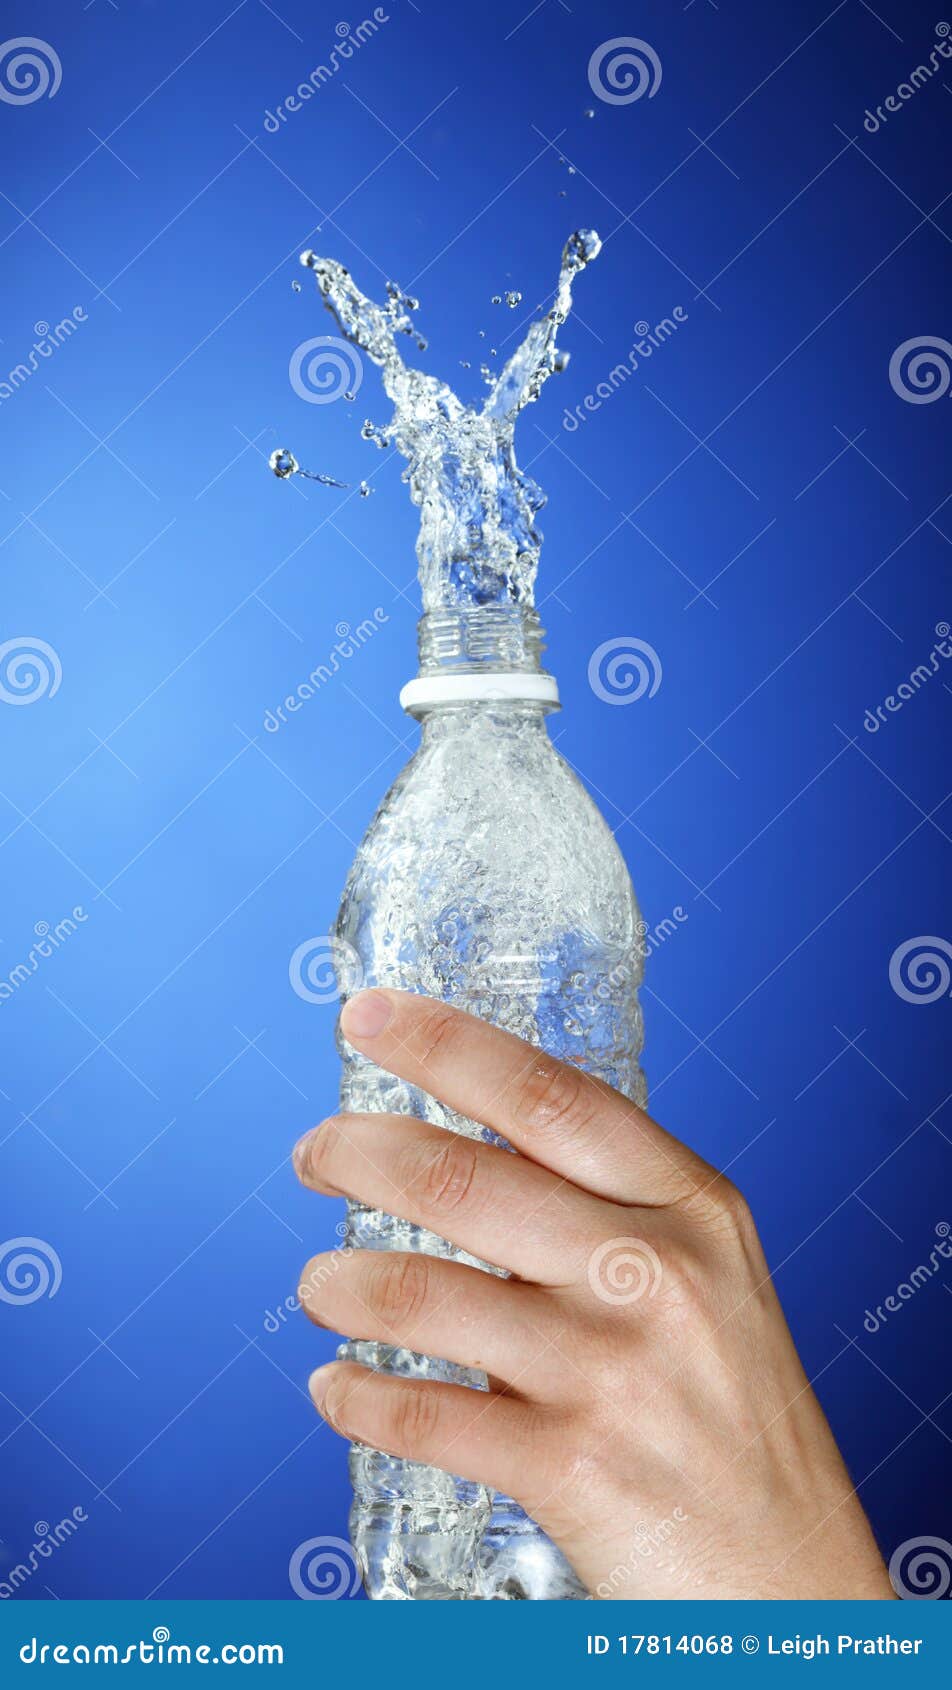 Wasserspritzen. Wasser, das aus einer Wasserflasche heraus spritzt